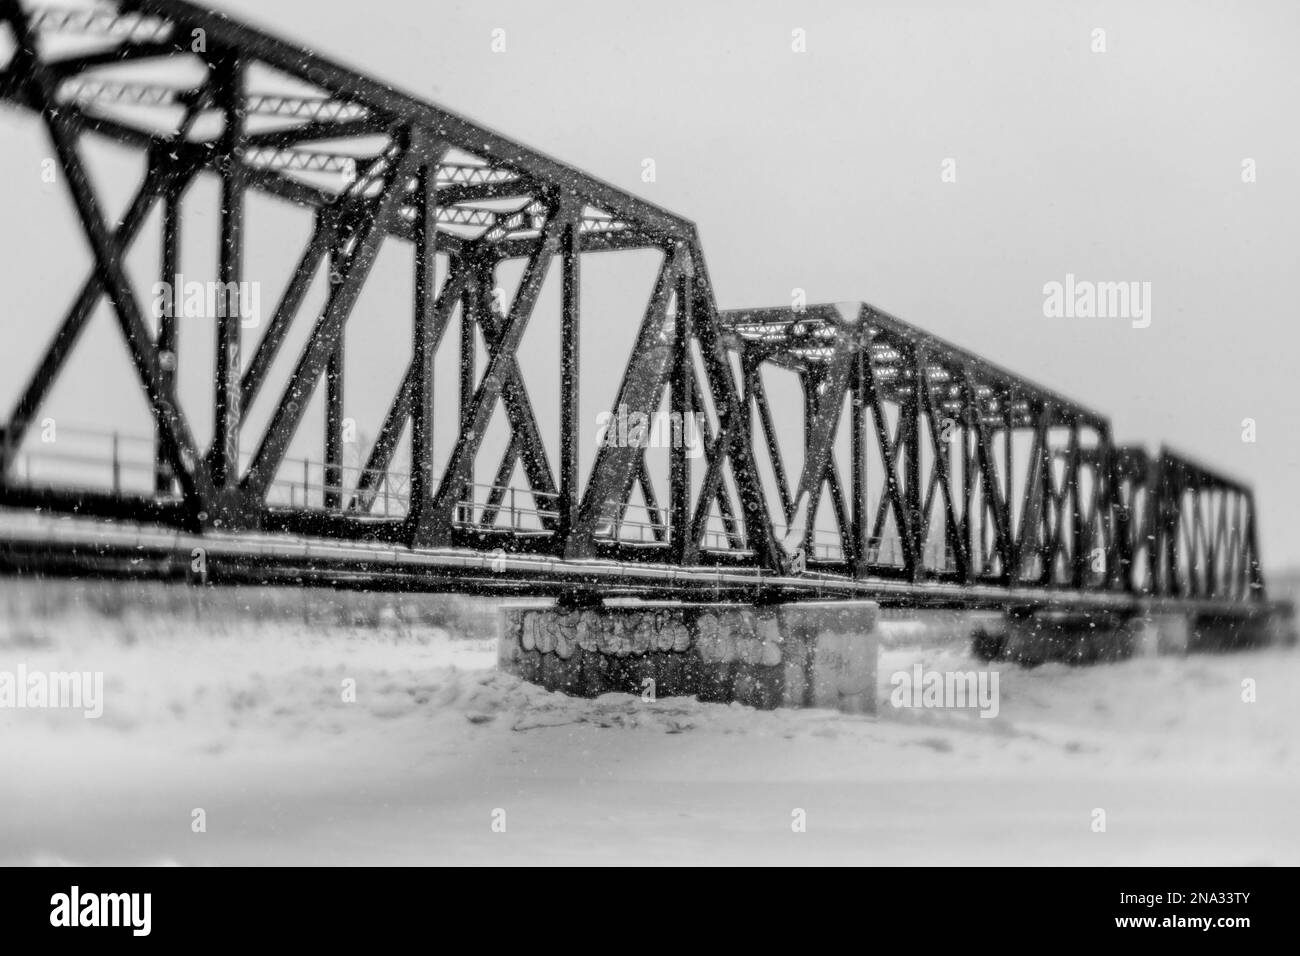 ancien pont de train en acier dans la tempête de neige, image en noir et blanc Banque D'Images